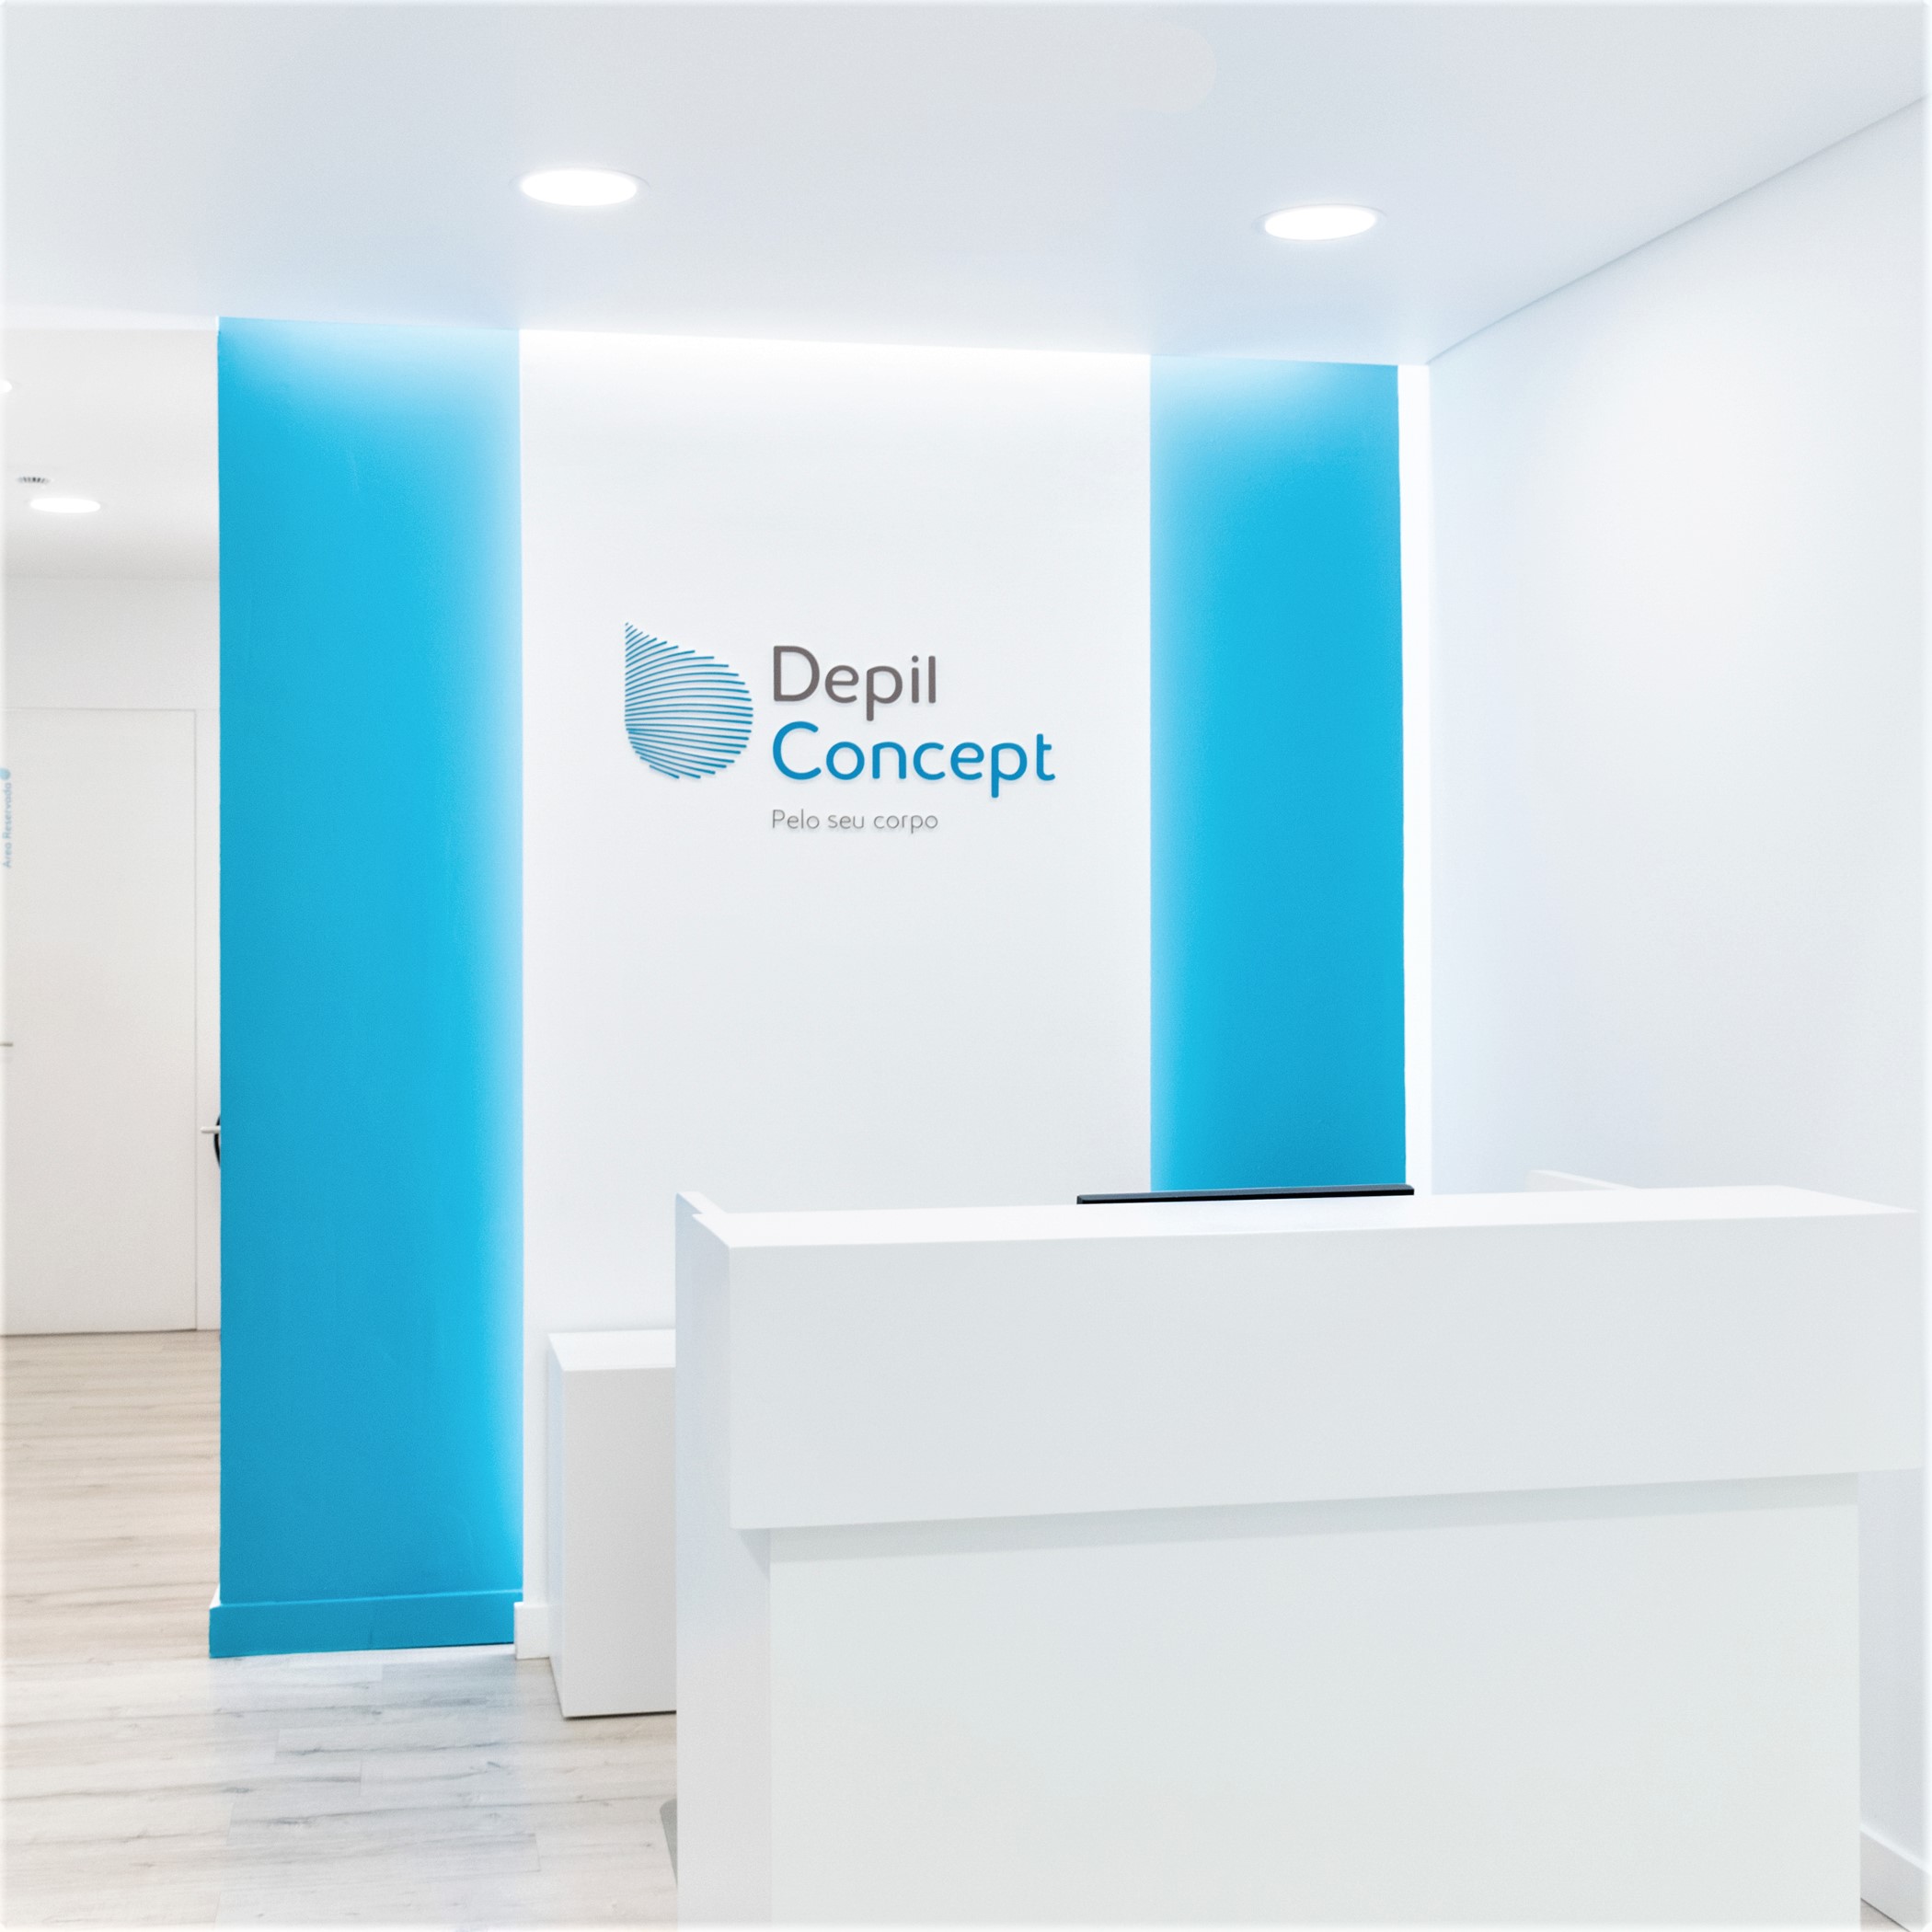 DepilConcept abre 60ª clínica em Portugal